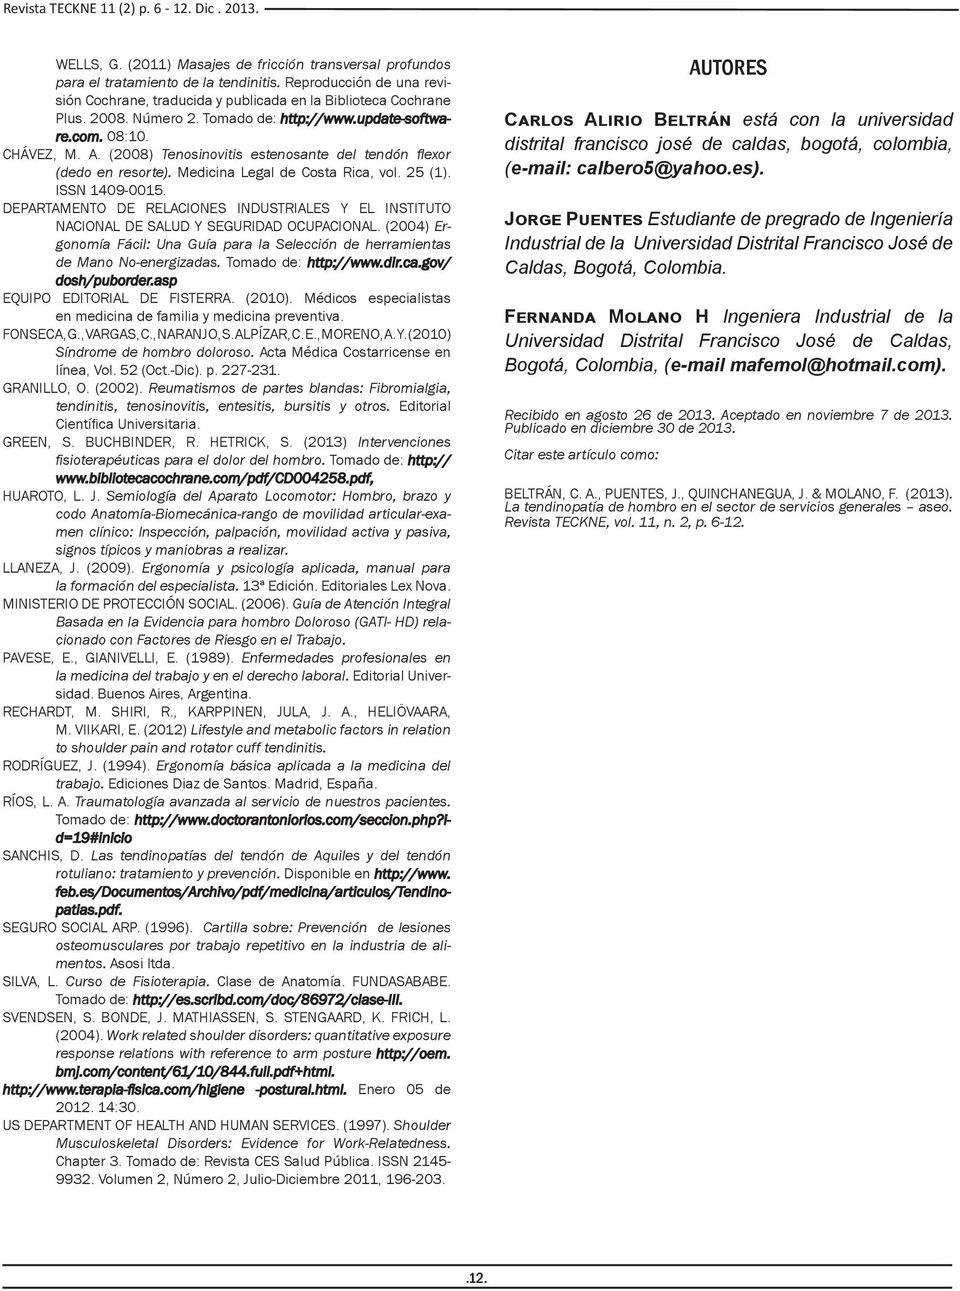 (2008) Tenosinovitis estenosante del tendón flexor (dedo en resorte). Medicina Legal de Costa Rica, vol. 25 (1). ISSN 1409-0015.